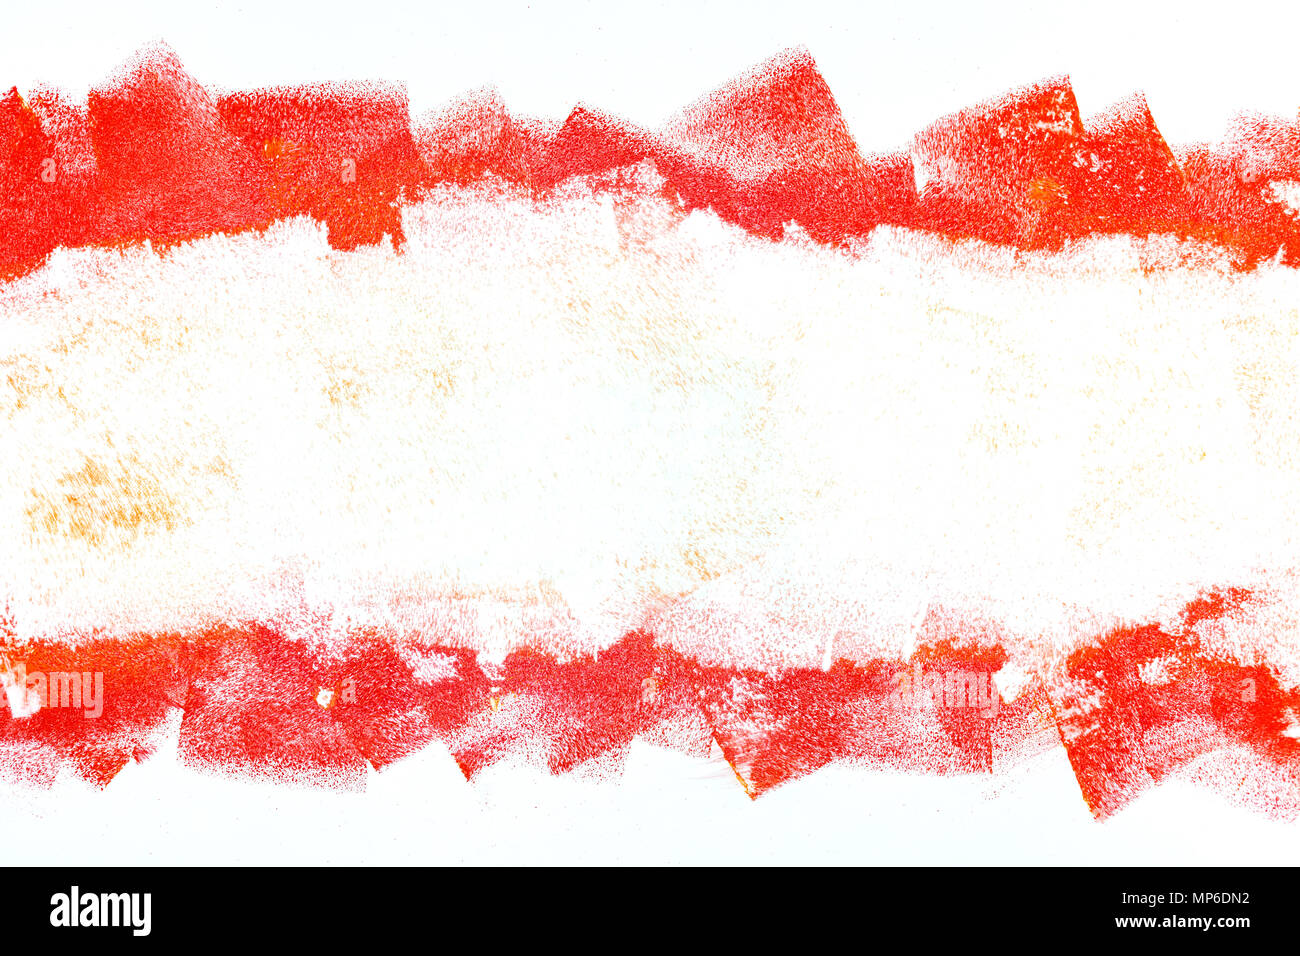 Abstract sfondo con vernice rossa corse di vernice grunge corse a rullo Foto Stock